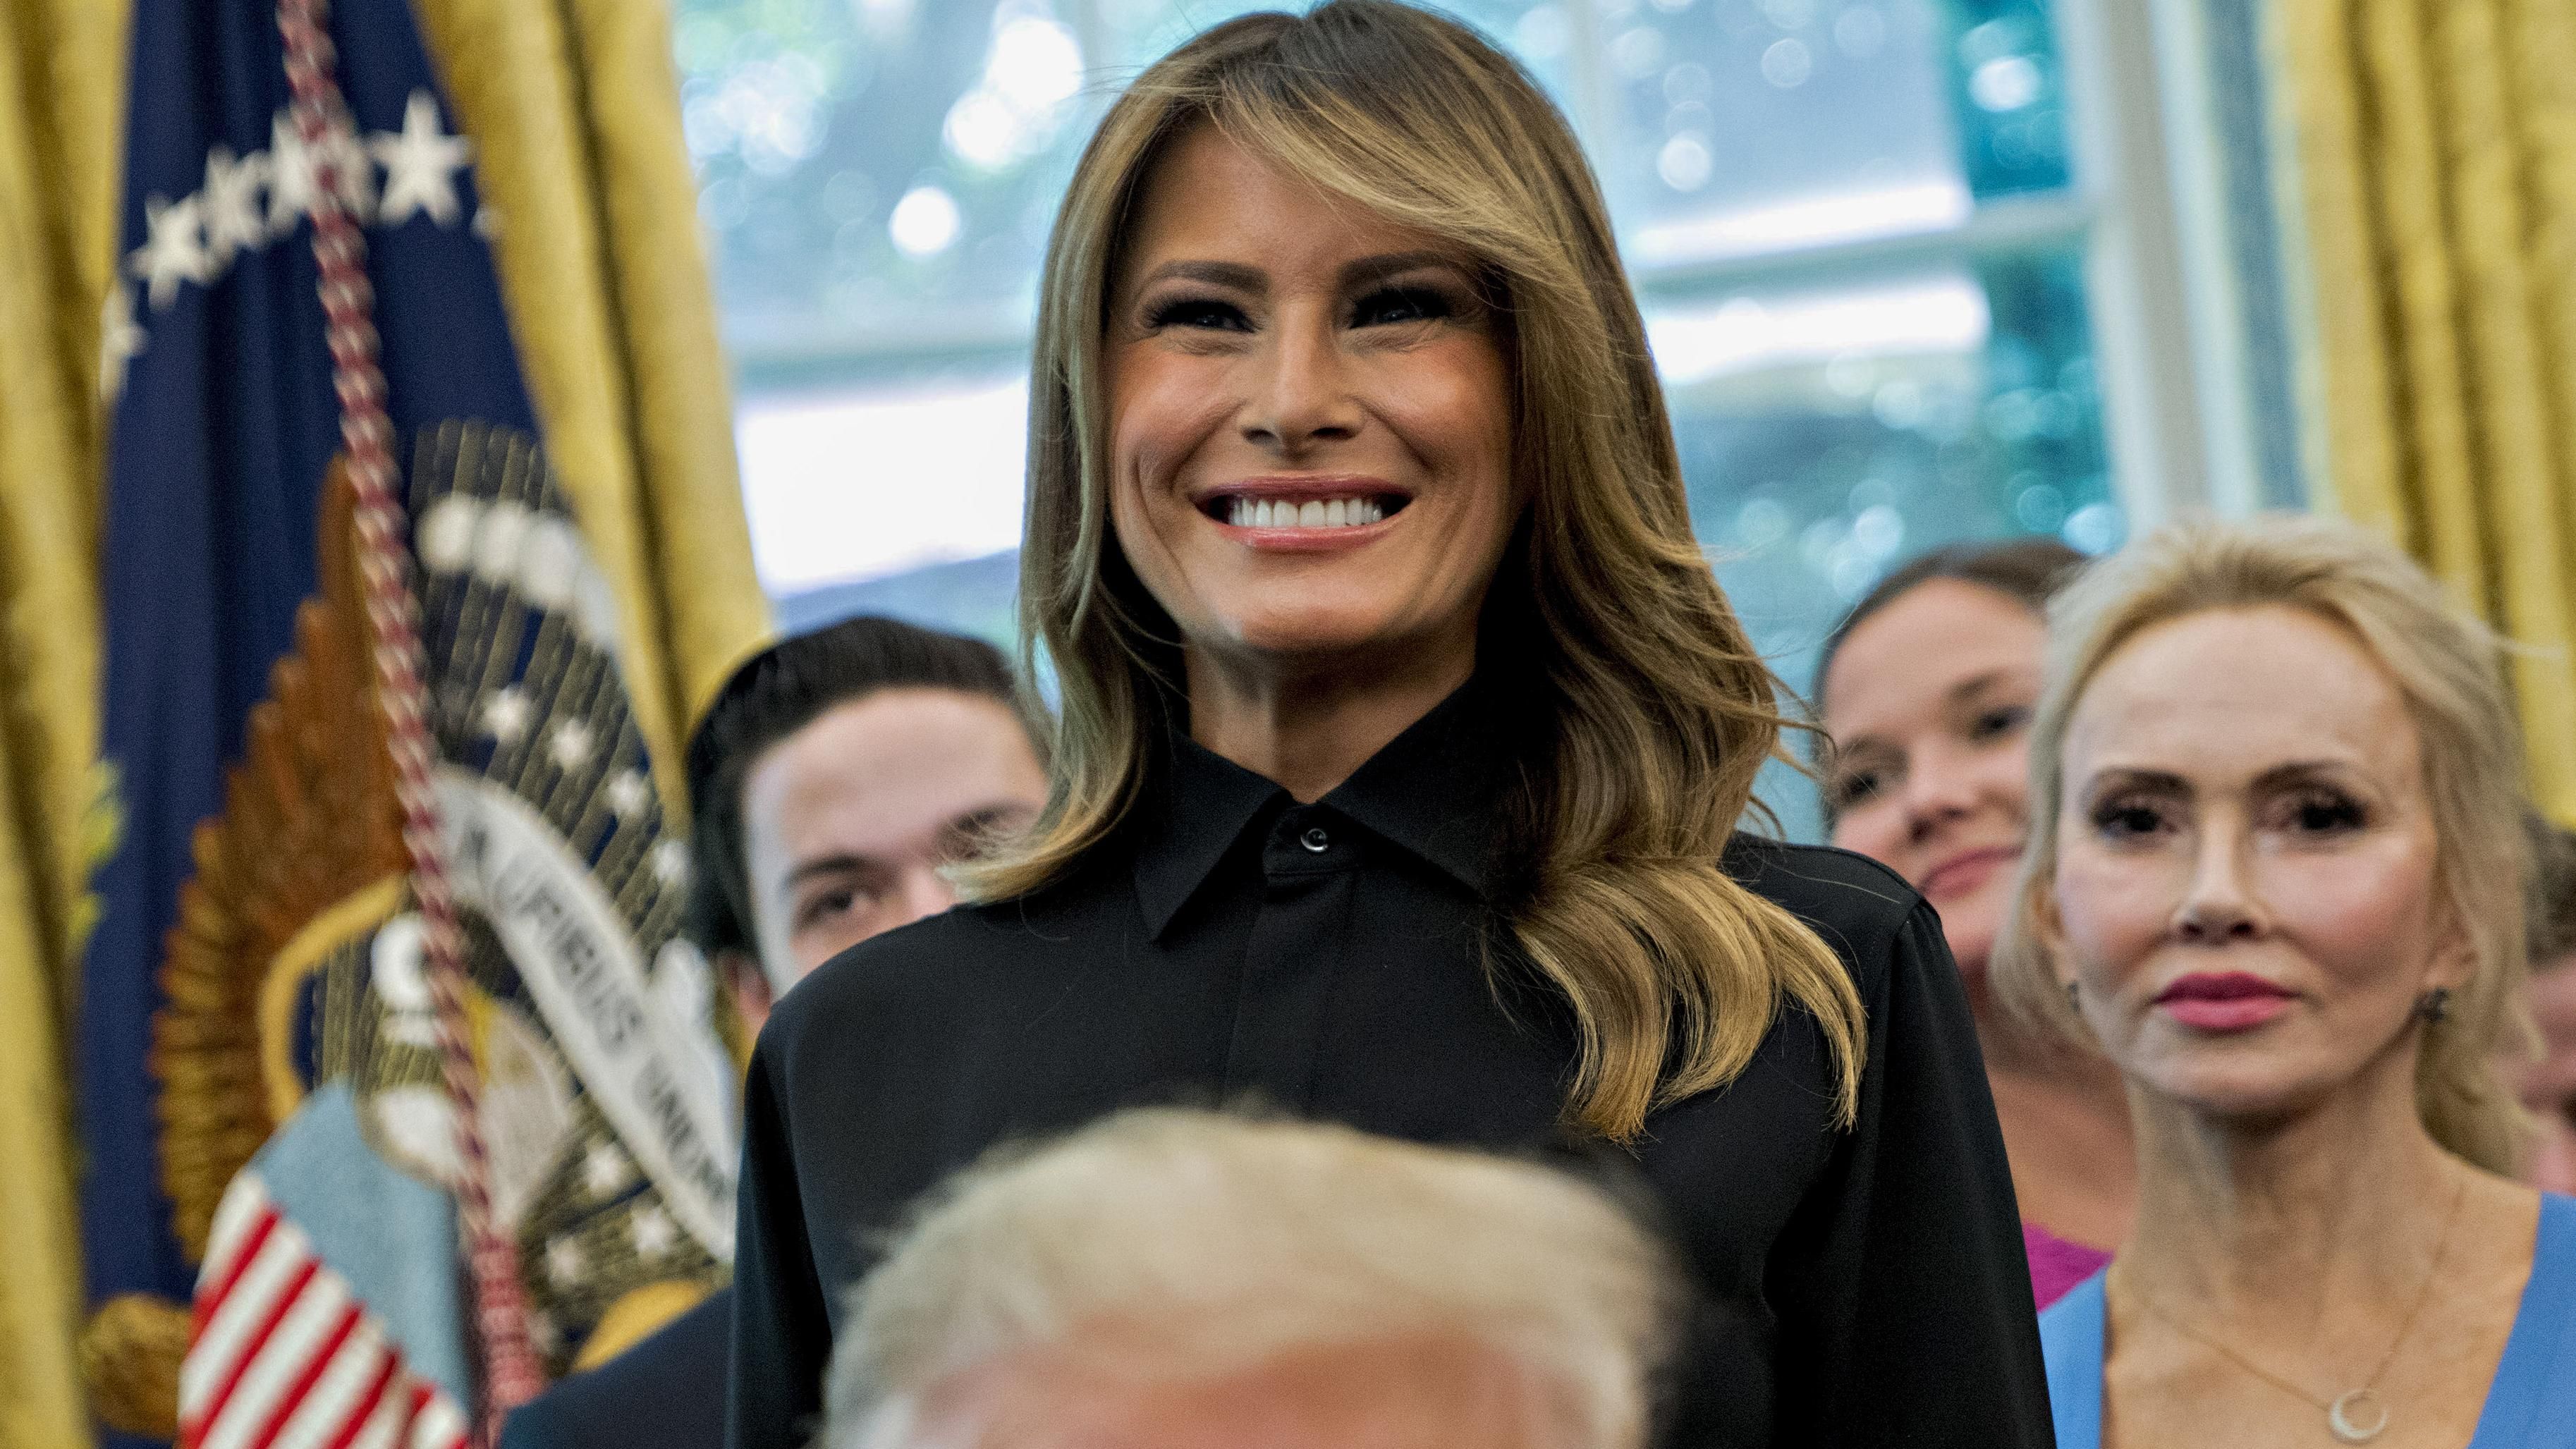 В штанах с лампасами и черной блузке: Мелания Трамп засветила элегантный образ в Белом доме